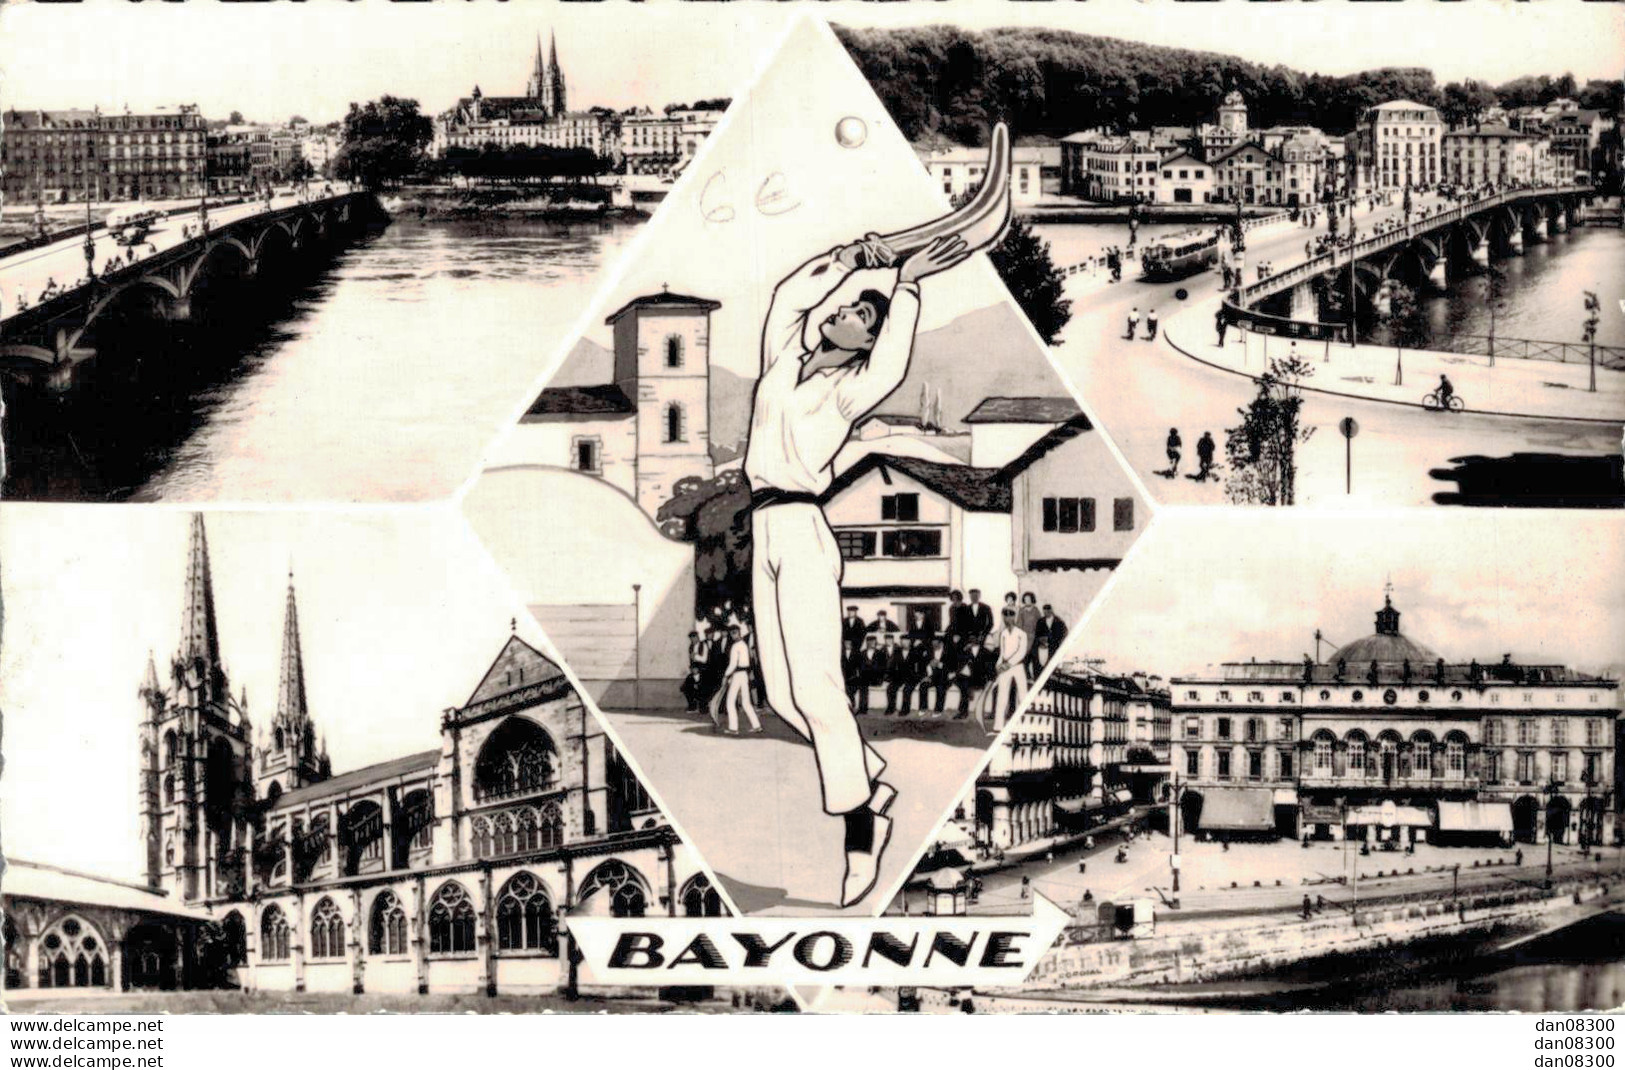 64 BAYONNE L'ADOUR, PONT ST ESPRIT, PELOTARI, CATHEDRALE, HOTEL DE VILLE CPSM - Bayonne